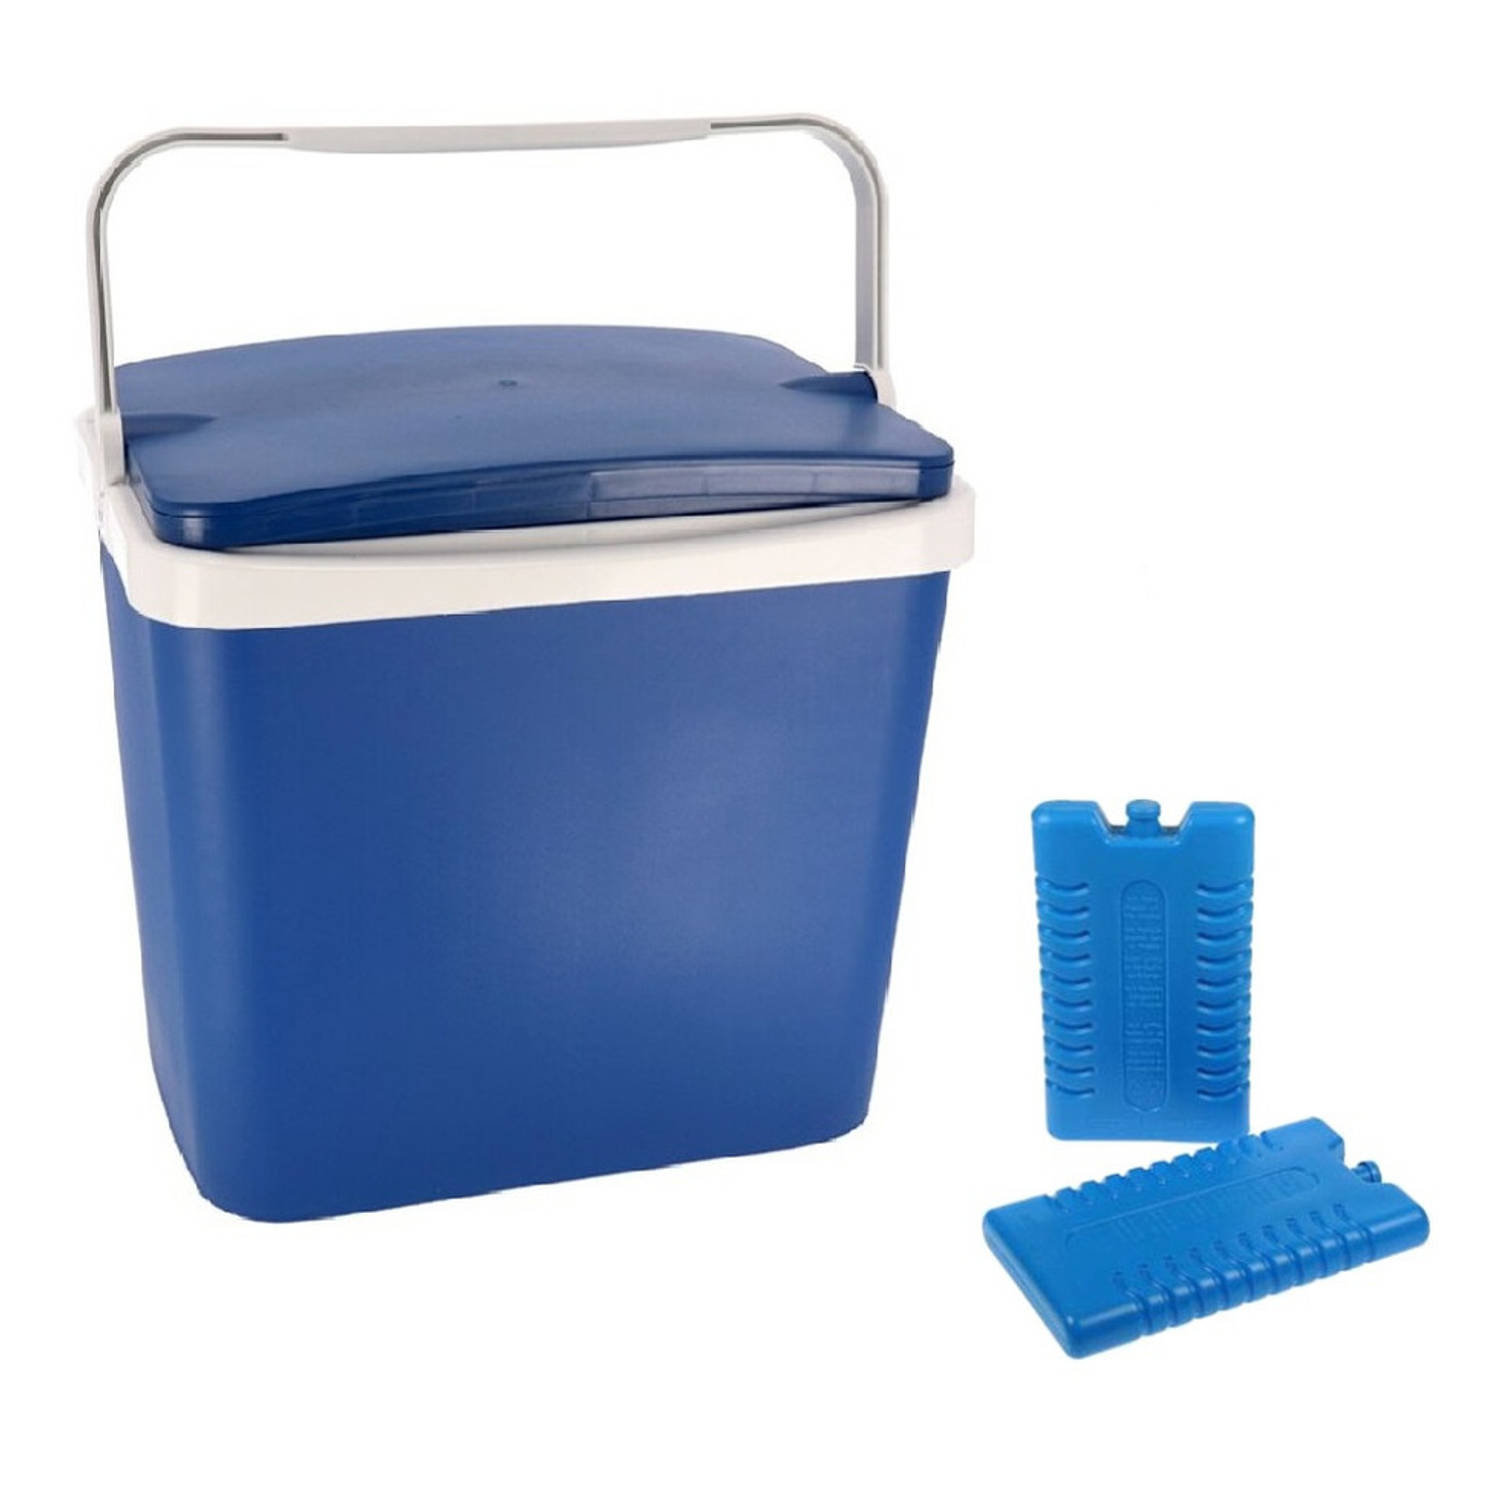 Koelbox donkerblauw 29 liter 40 x 29 x 44 cm incl. 6 koelelementen - Koelboxen